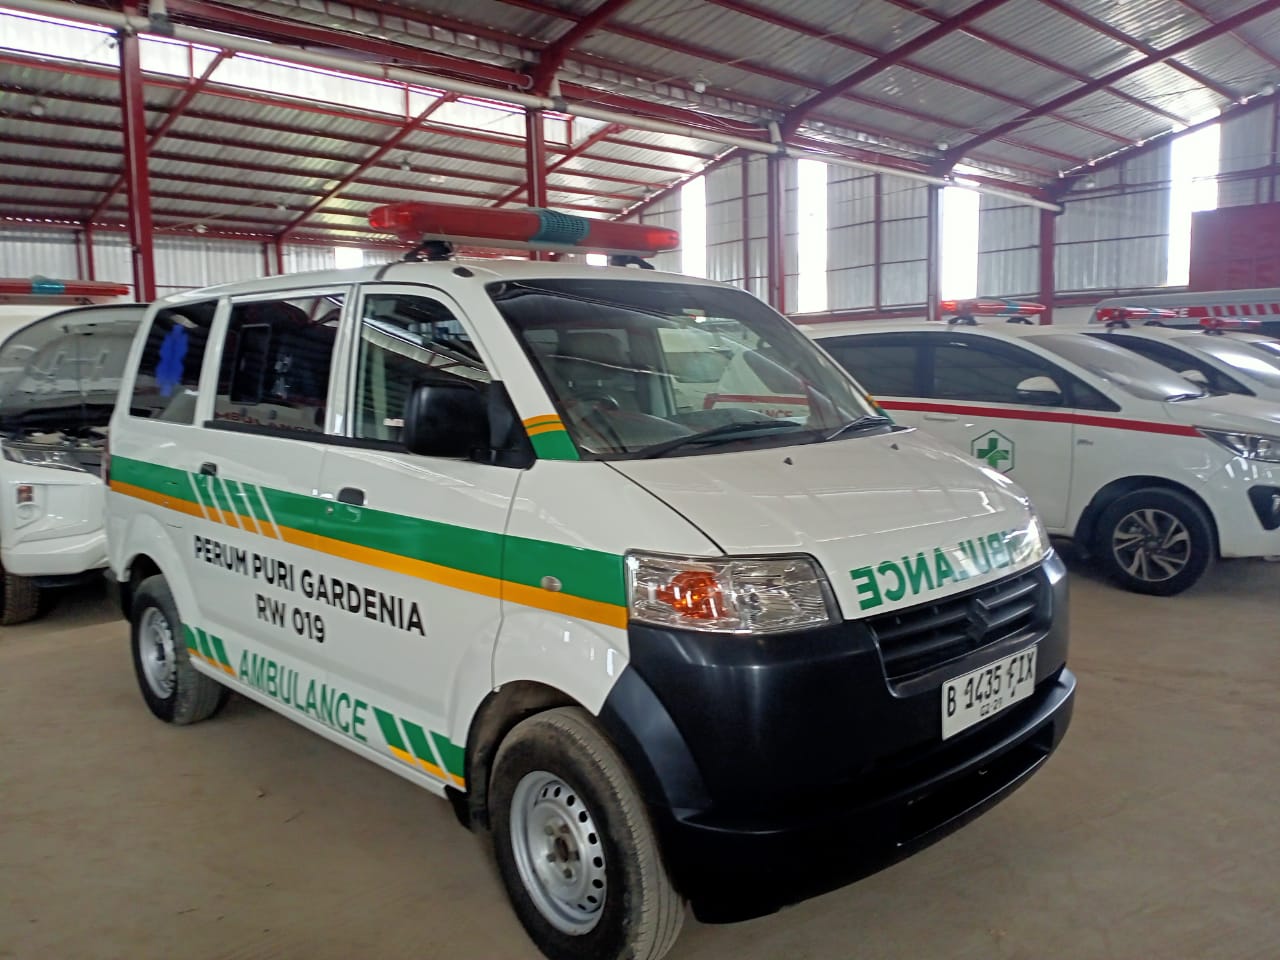 Harga Karoseri Ambulance Berkualitas Pasuruan